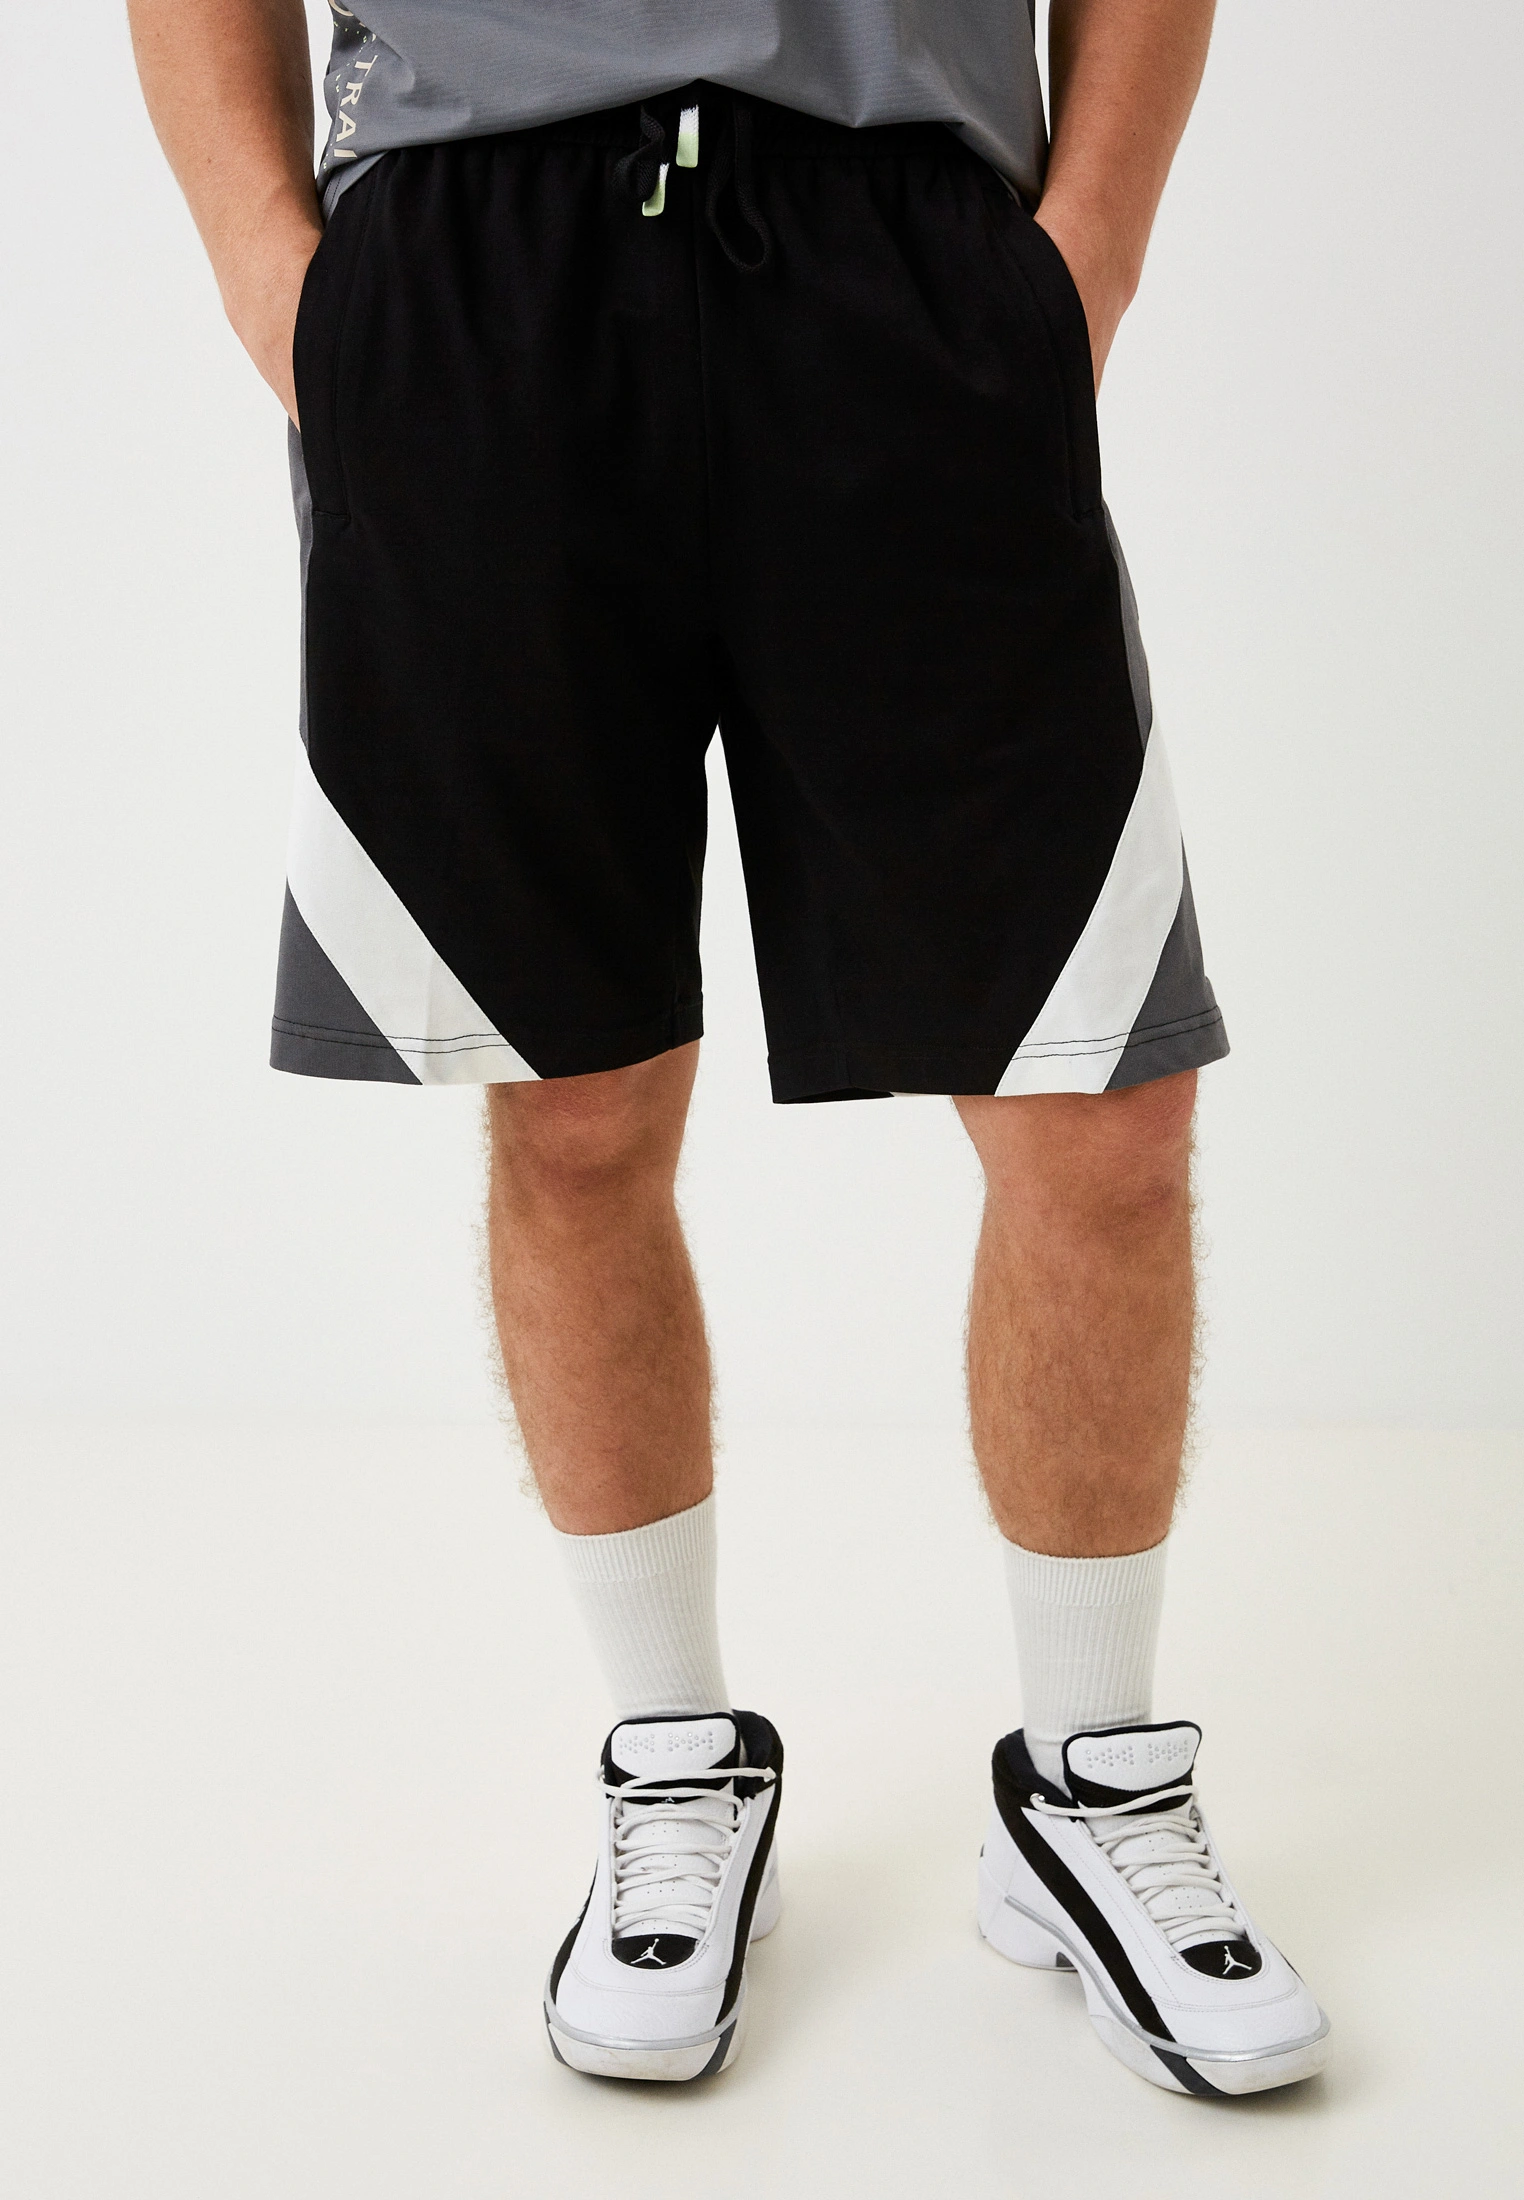 Баскетбольные шорты PEAK (FW3232461, Black)